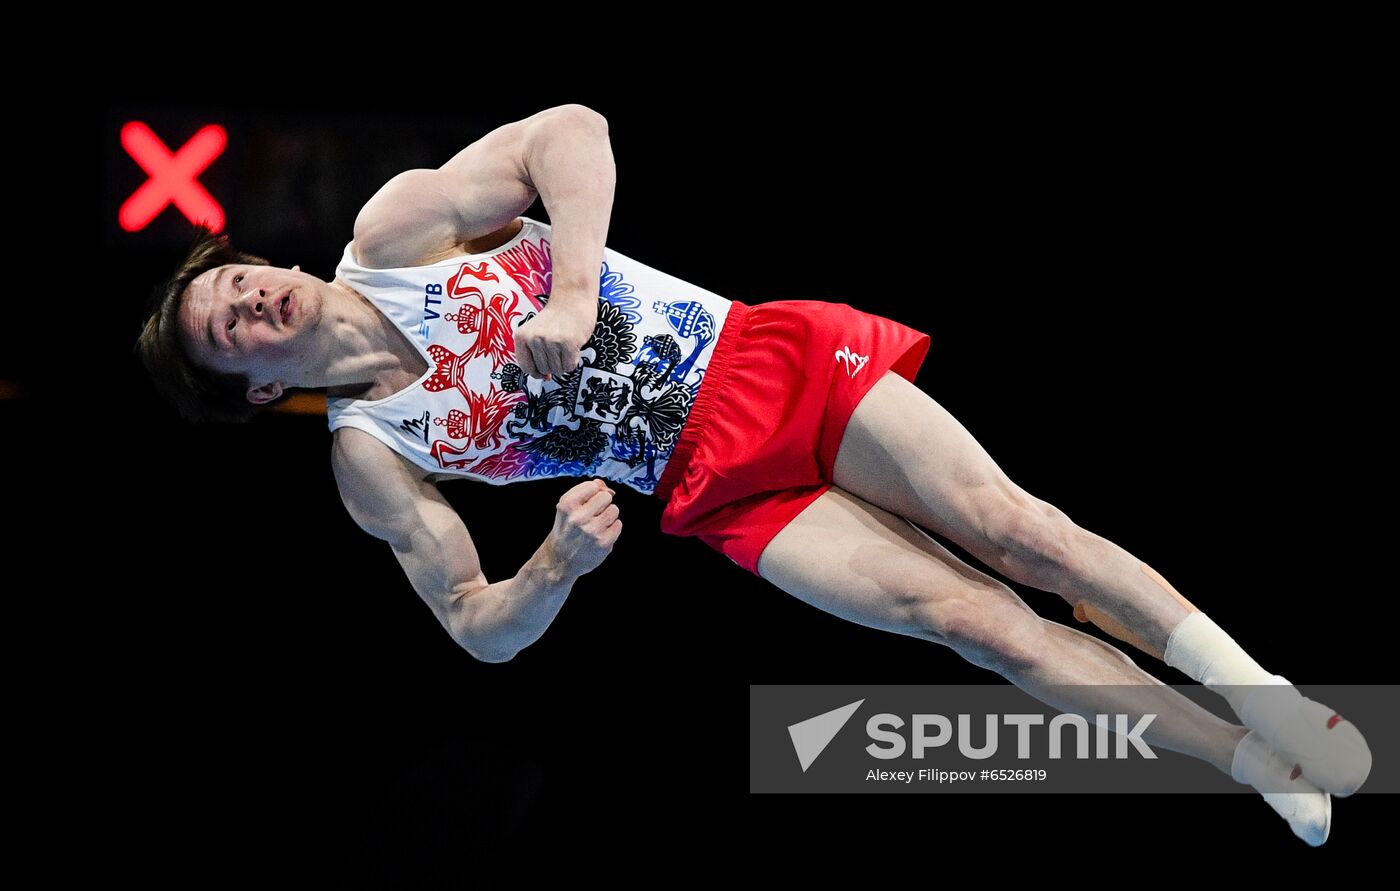 Switzerland Artistic Gymnastics European Championships